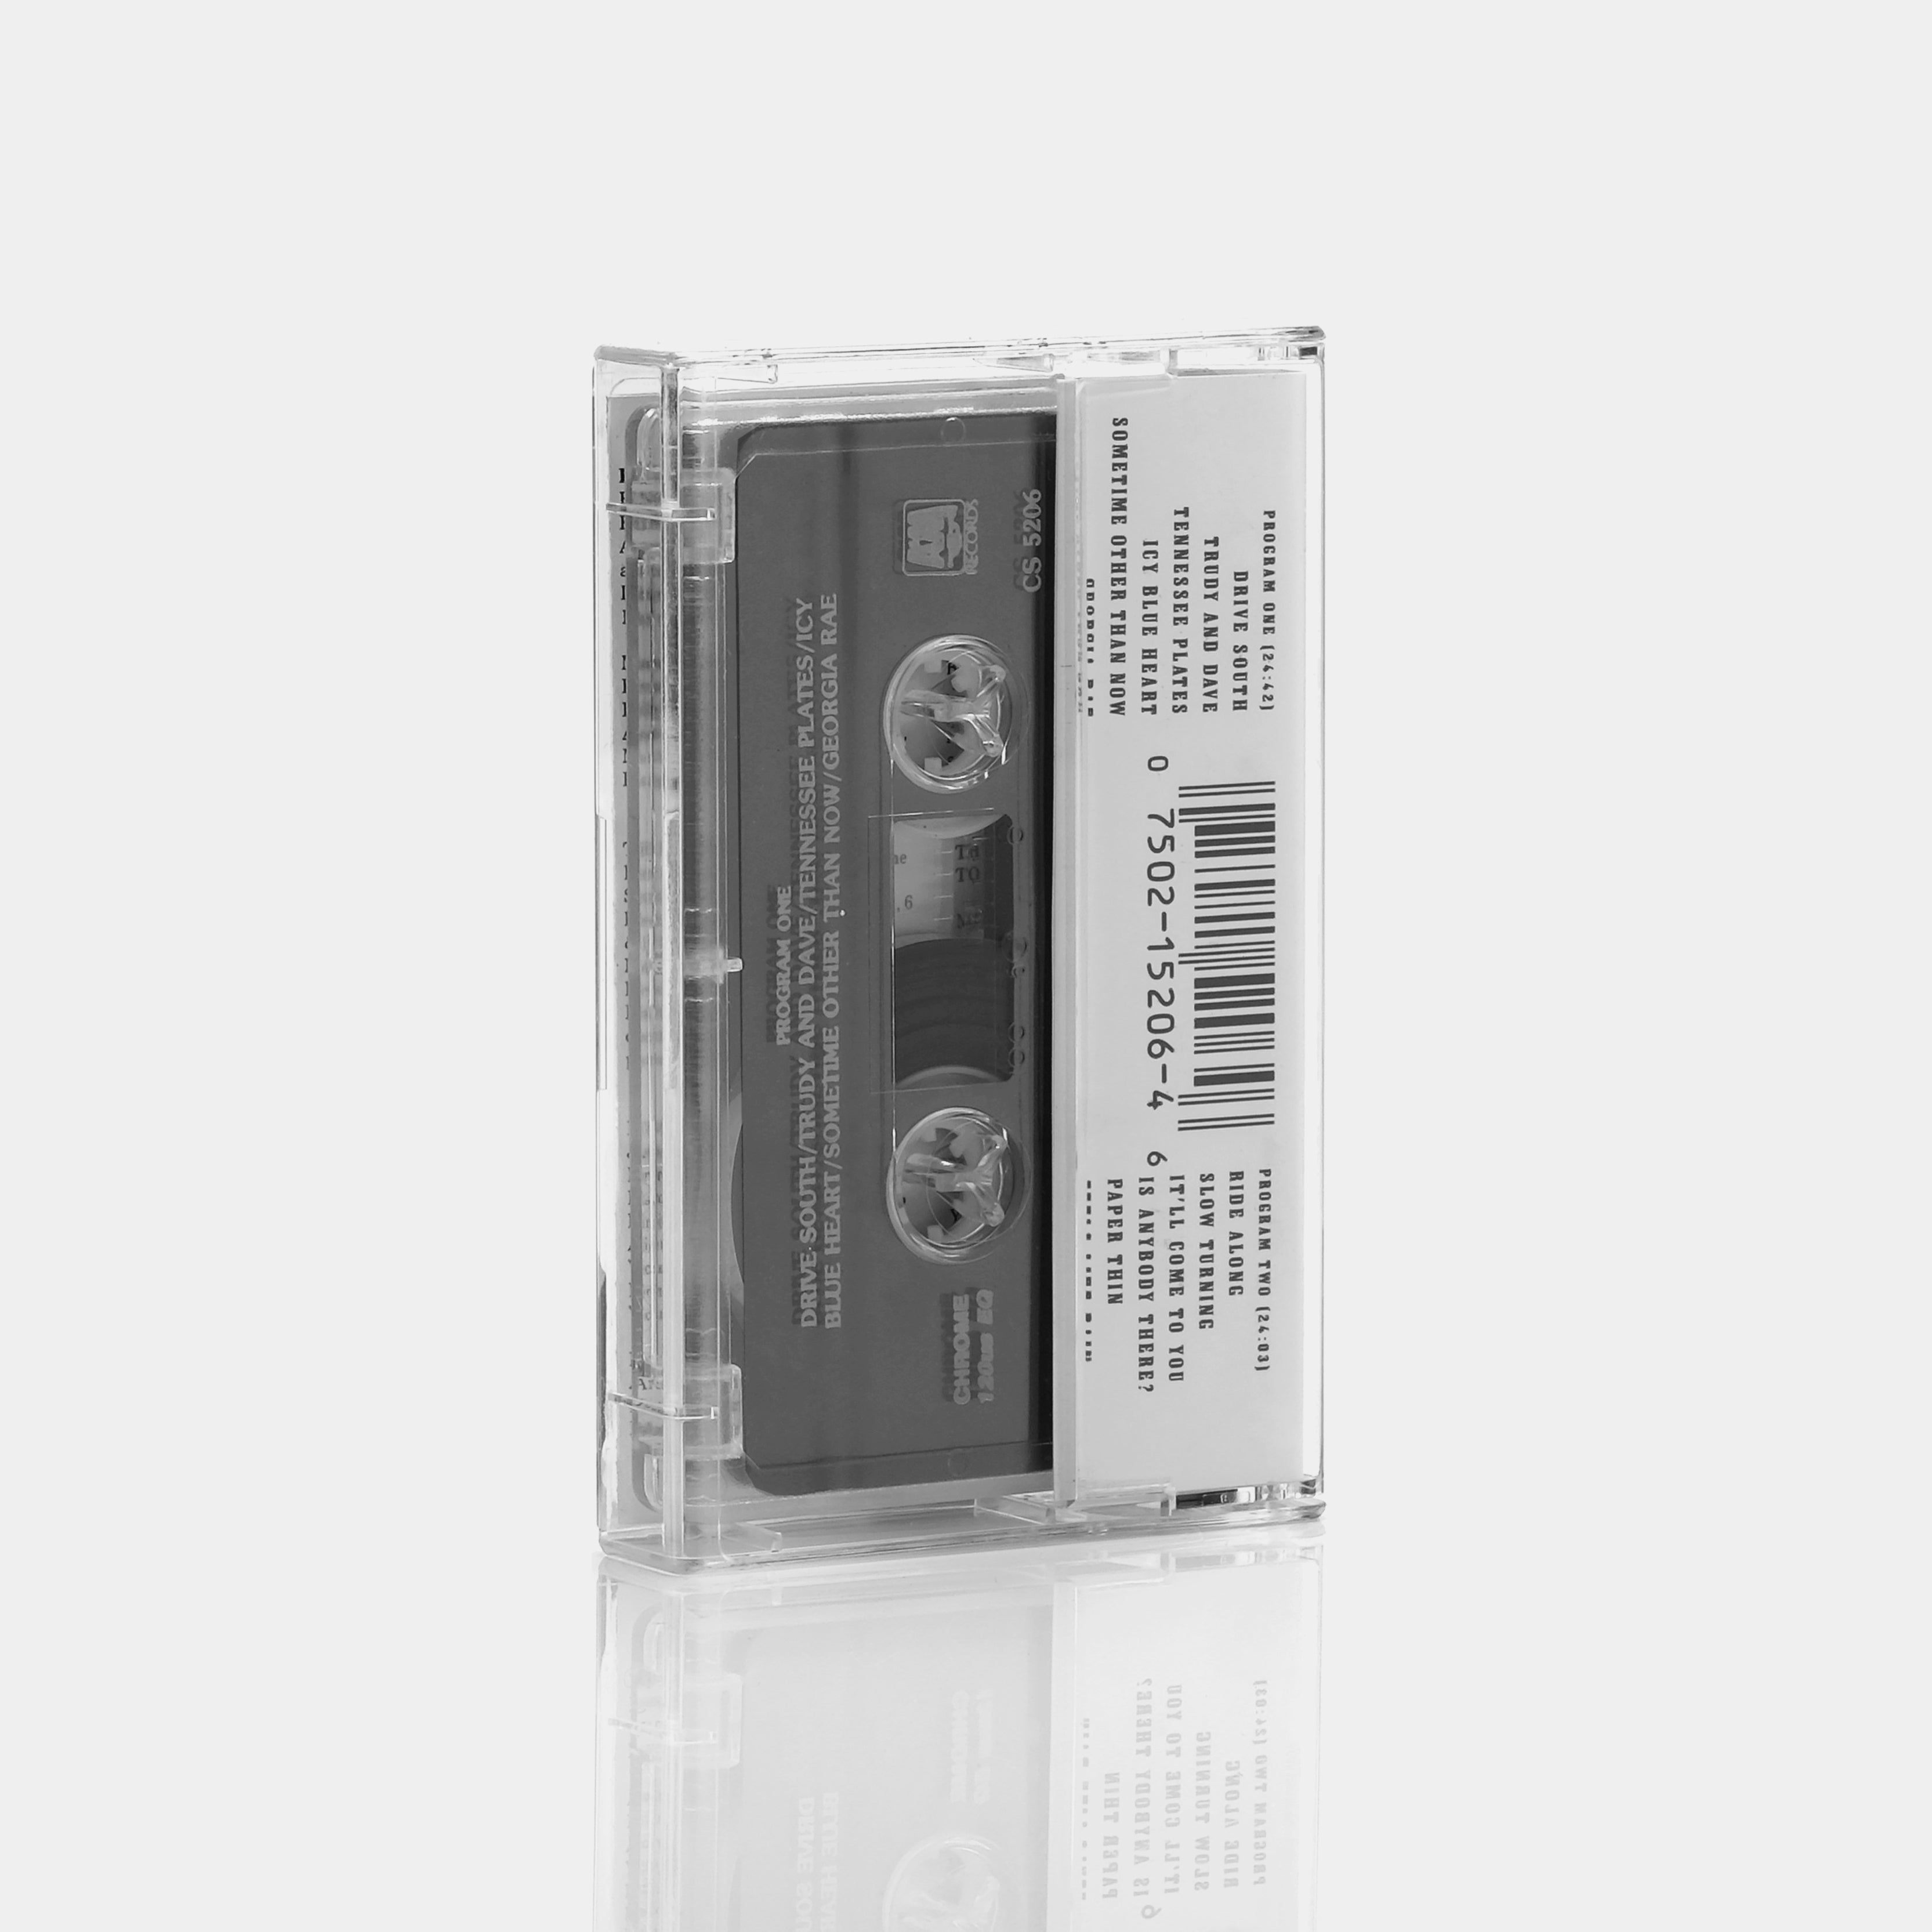 John Hiatt - Slow Turning Cassette Tape